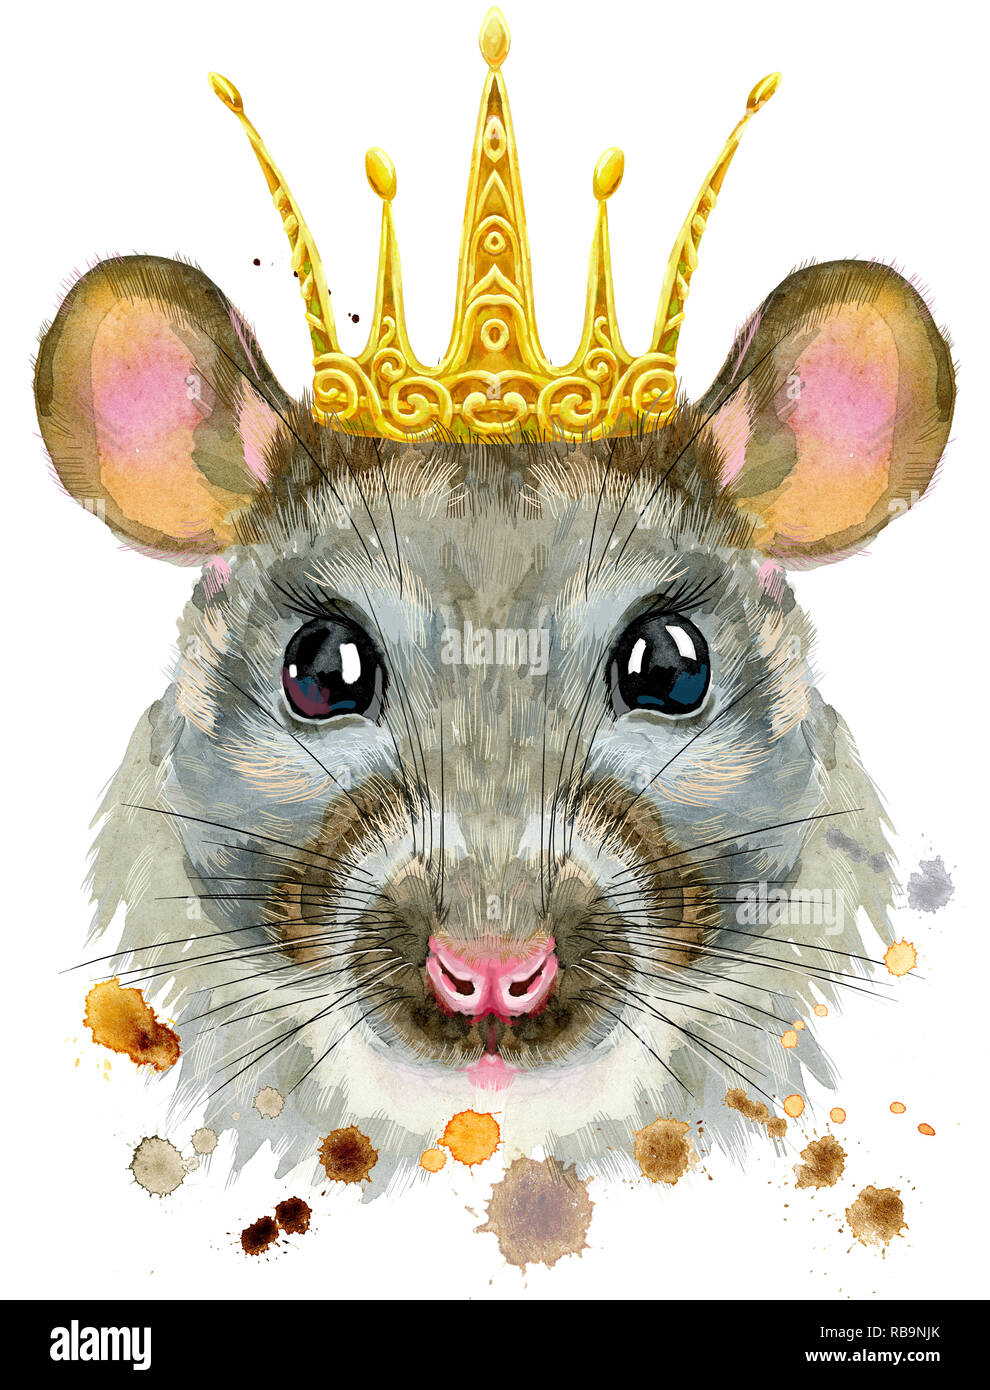 Rat King Wall Art Print // Cute Royal Lord of the Rats & Mice 